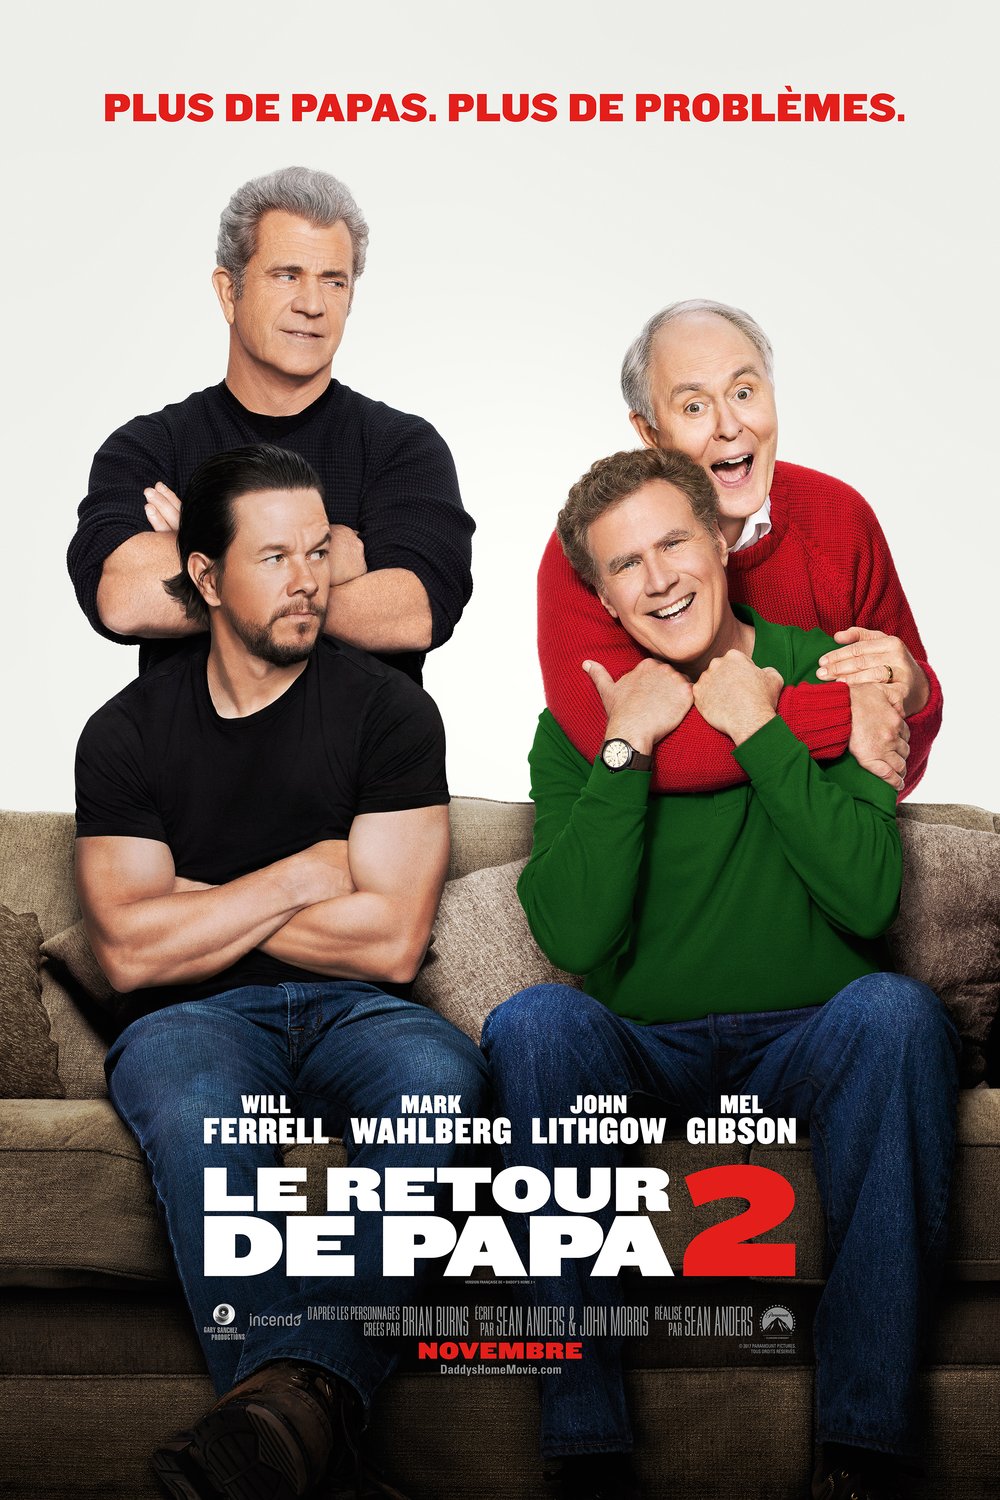 Poster of the movie Le Retour de papa 2